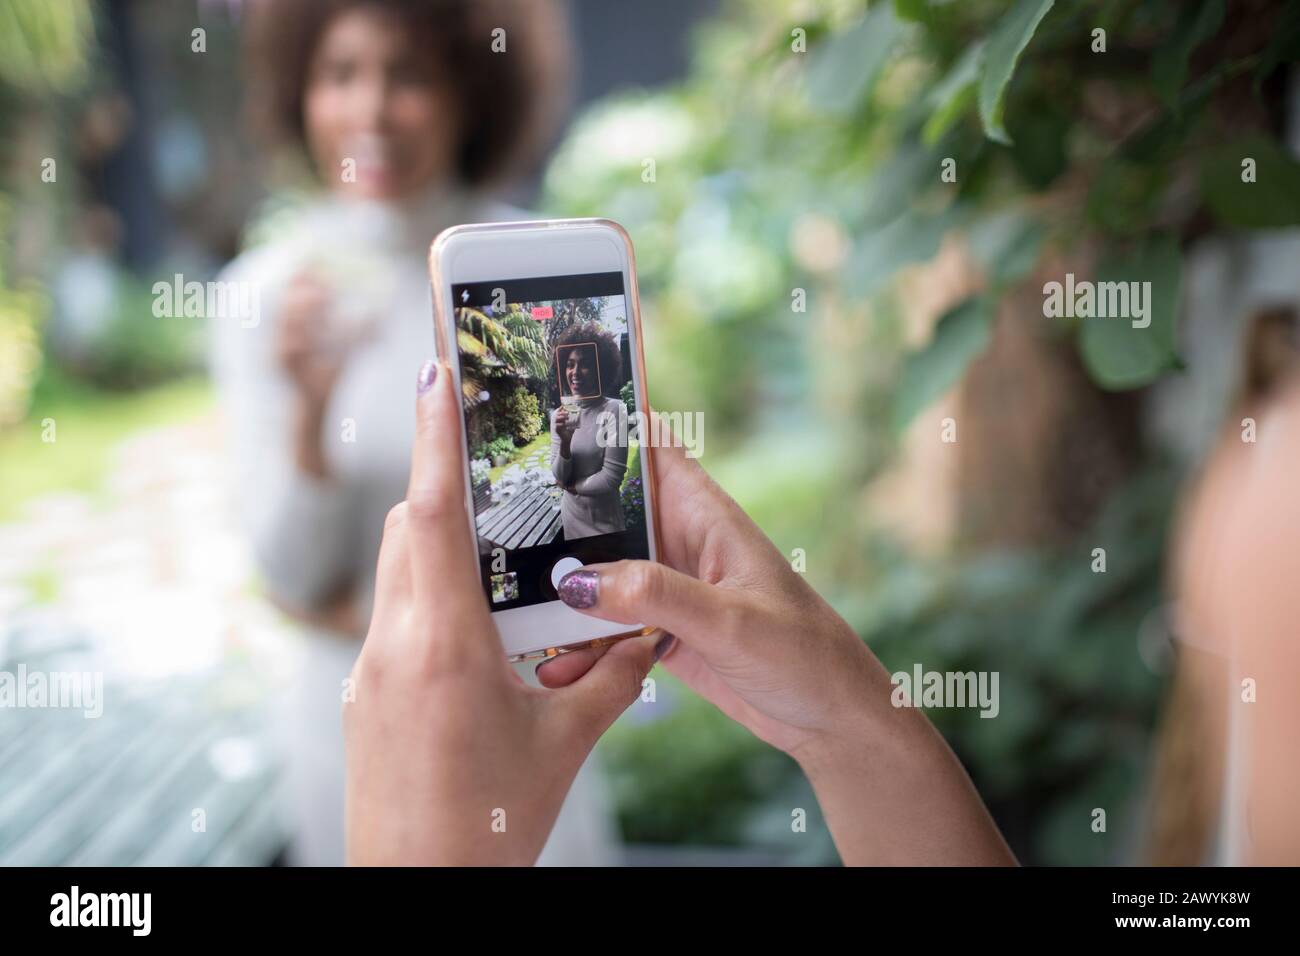 Persönliche Perspektive Frau mit Smartphone fotografiert Freund Stockfoto